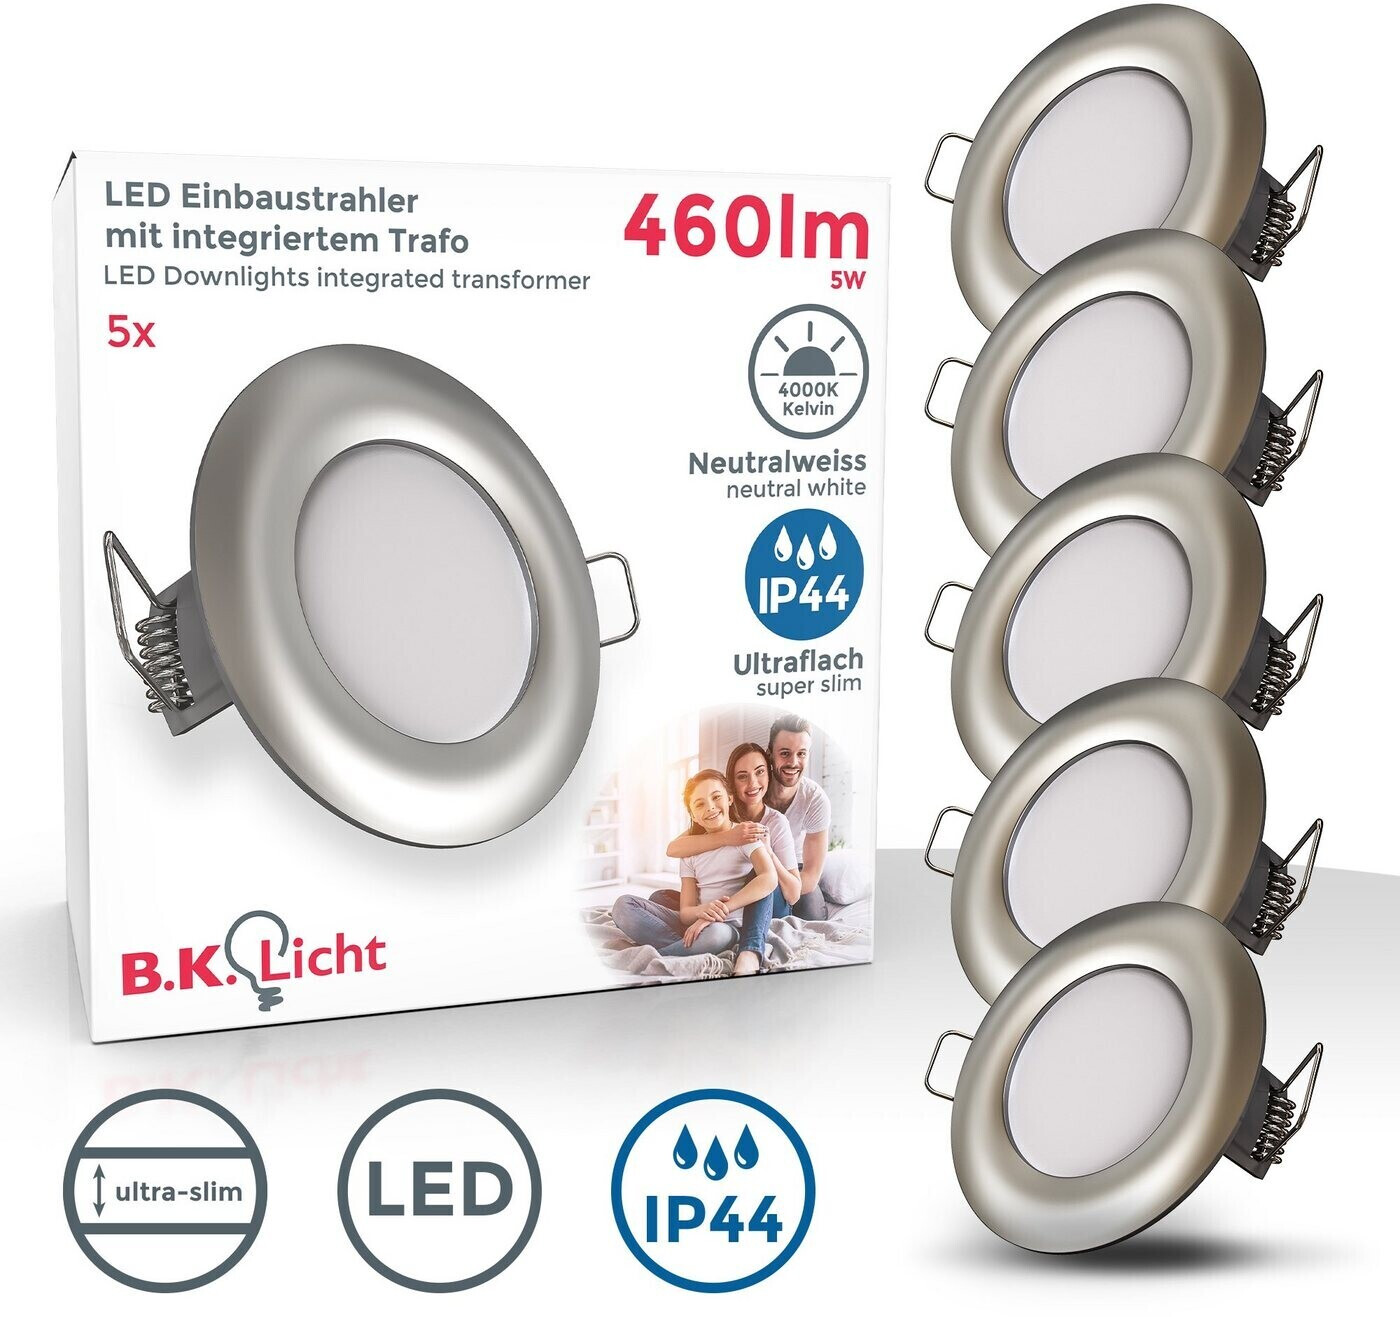 B.K.Licht LED Ø75 ab 5x5W/460lm (BKL1289) | IP44 € 4000k 45,90 bei Preisvergleich Einbaustrahler